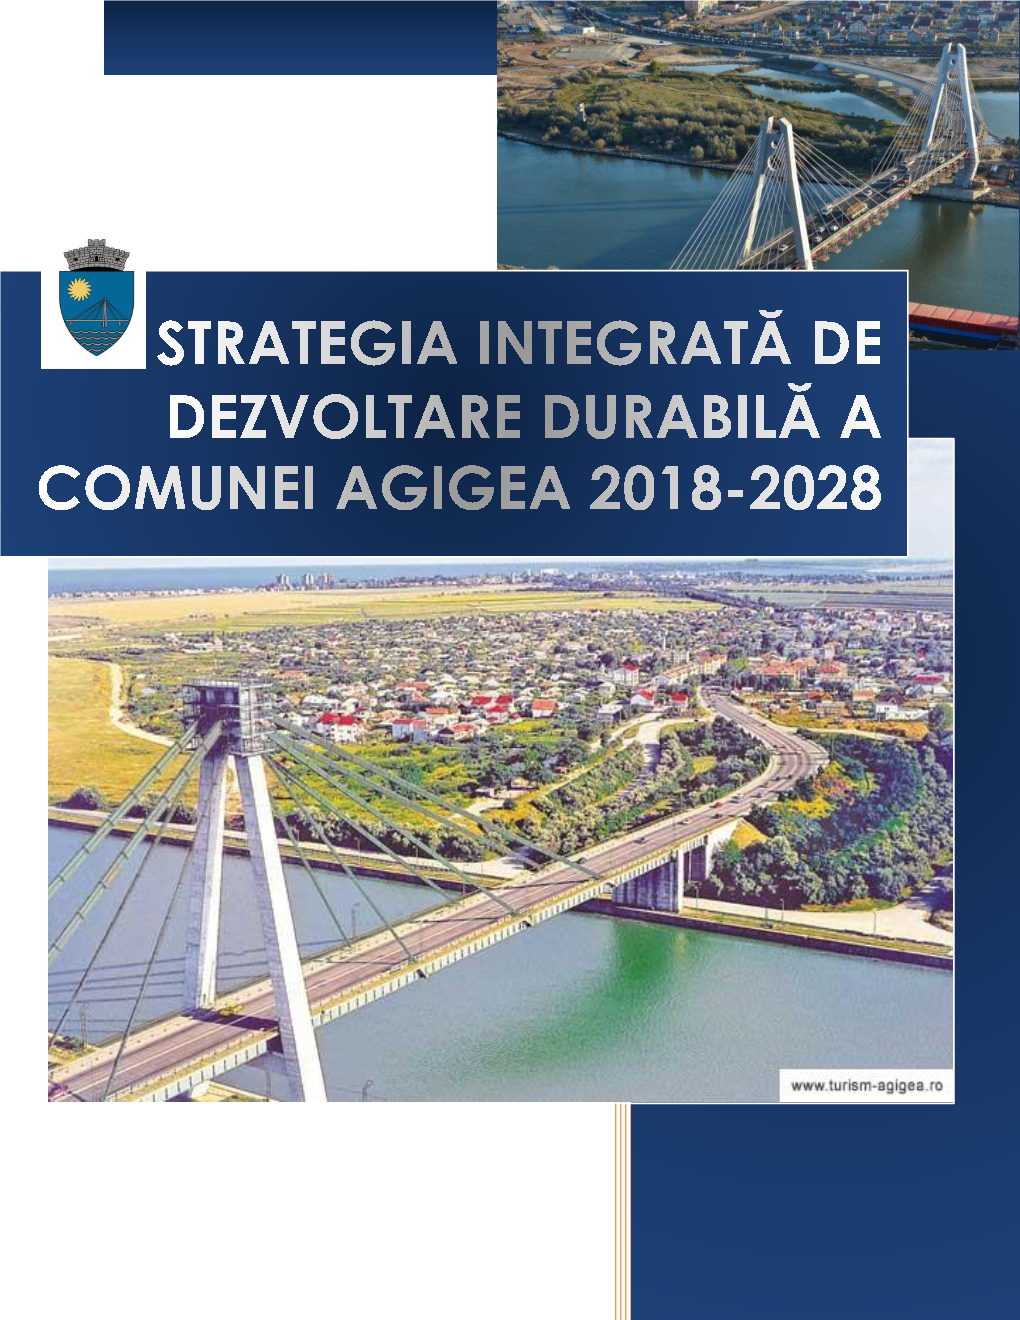 Strategia Integrată De Dezvoltare Durabilă a Comunei Agigea 2018-2028